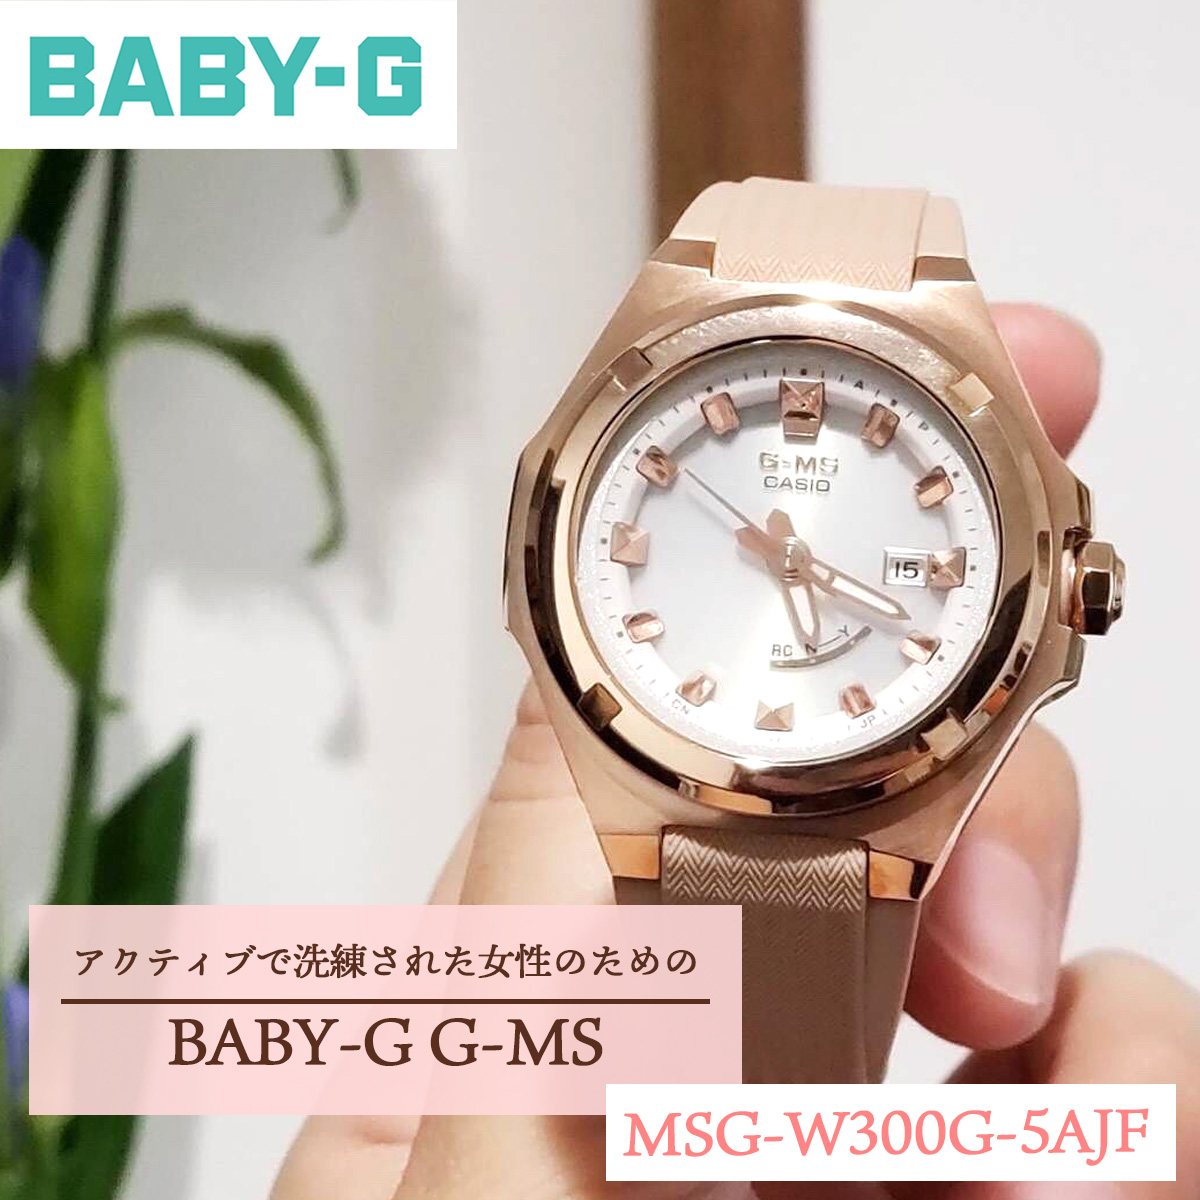 BABY-G カシオ ベビーG レディース G-MS 電波 ソーラー 腕時計 タフソーラー MSG-W300G-5AJF